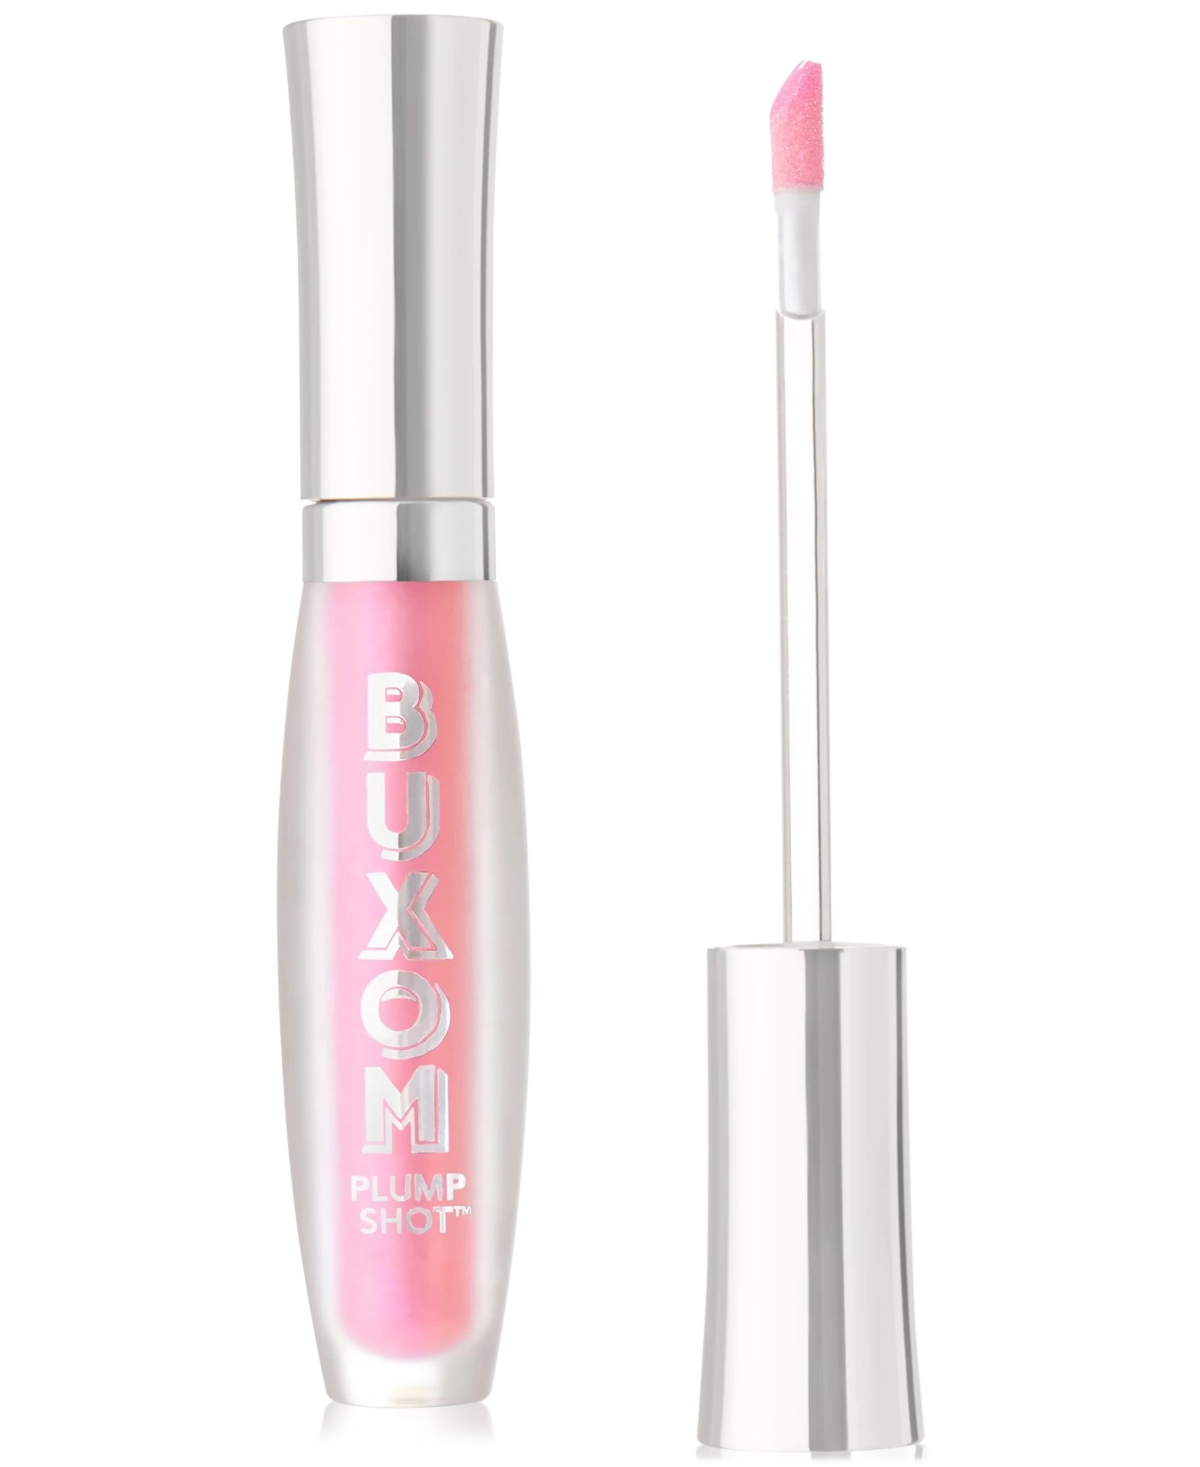 Plump Shot Collagen Lip Serum Multichrome Tints, 0.14 oz. - Spellbound Pink (opalescent pink with go